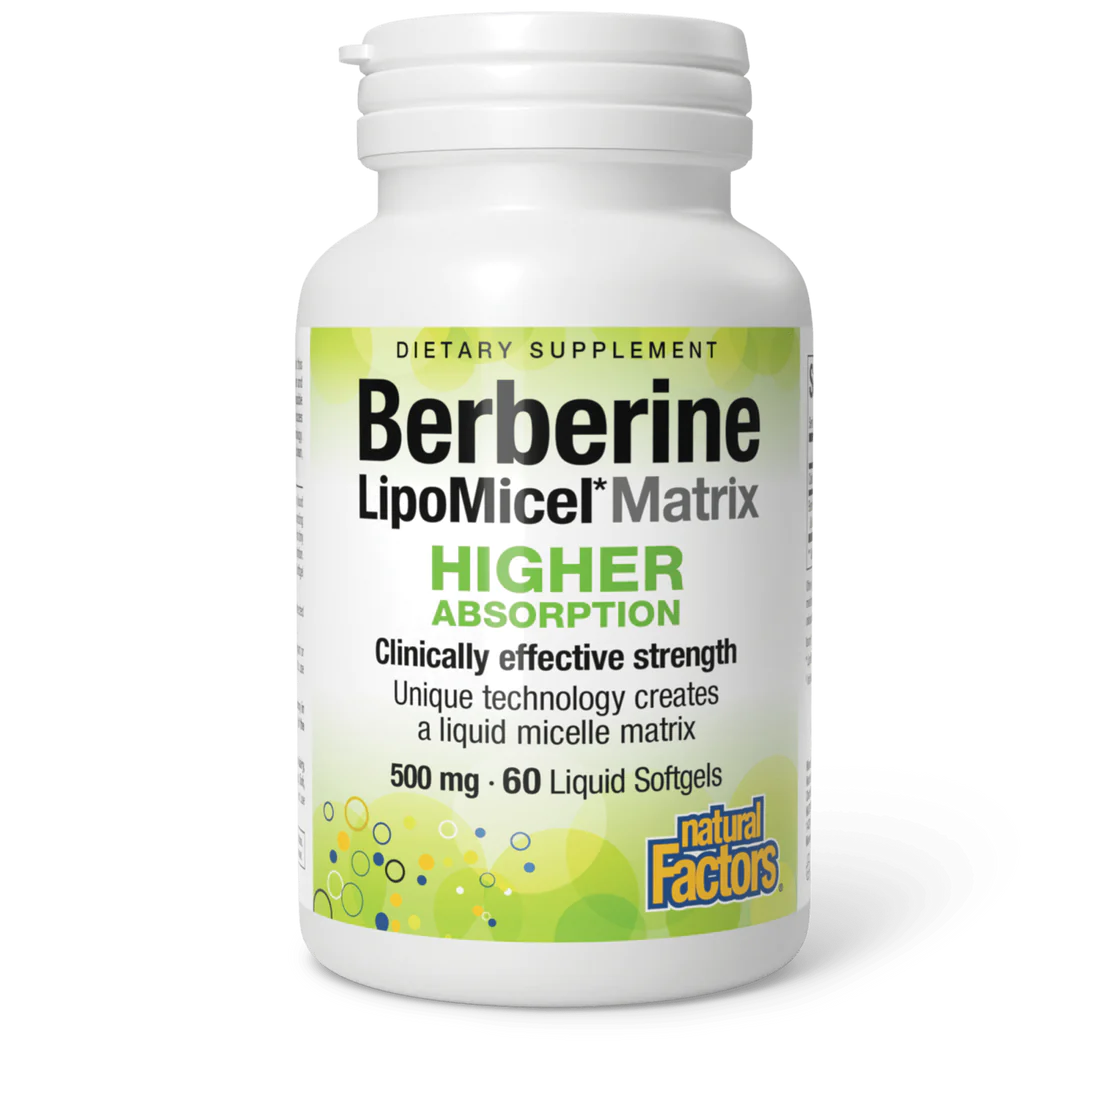 Berberine LipoMicel Matrix